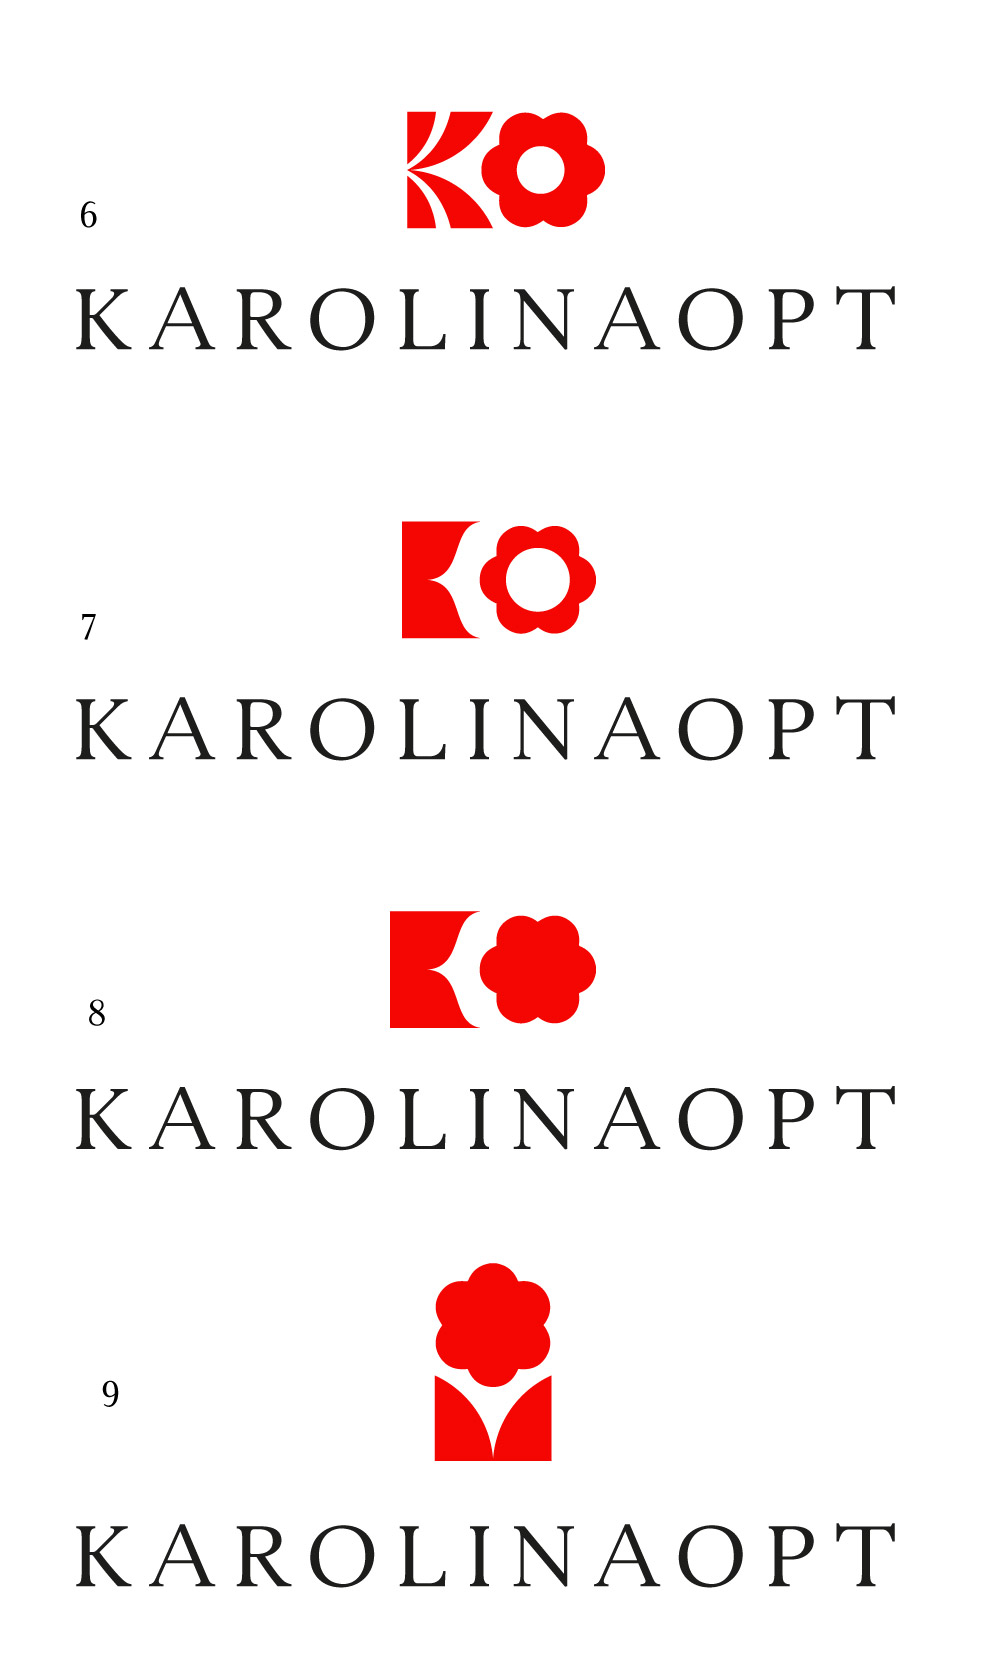 karolinaopt process 02